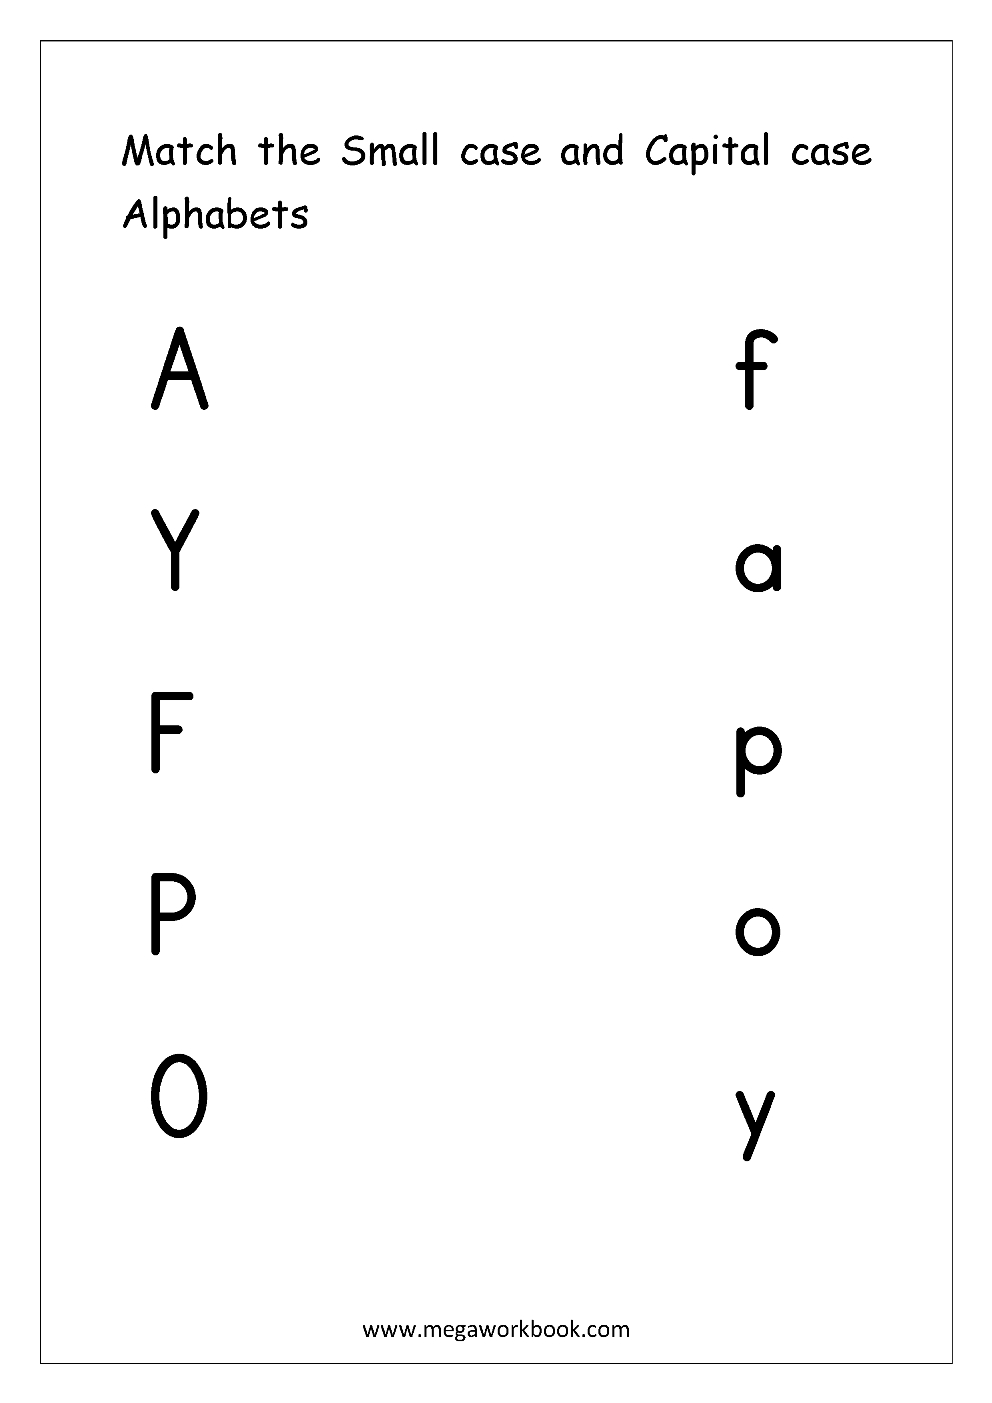 Free English Worksheets - Alphabet Matching - Megaworkbook | Abc Matching Worksheets Printable